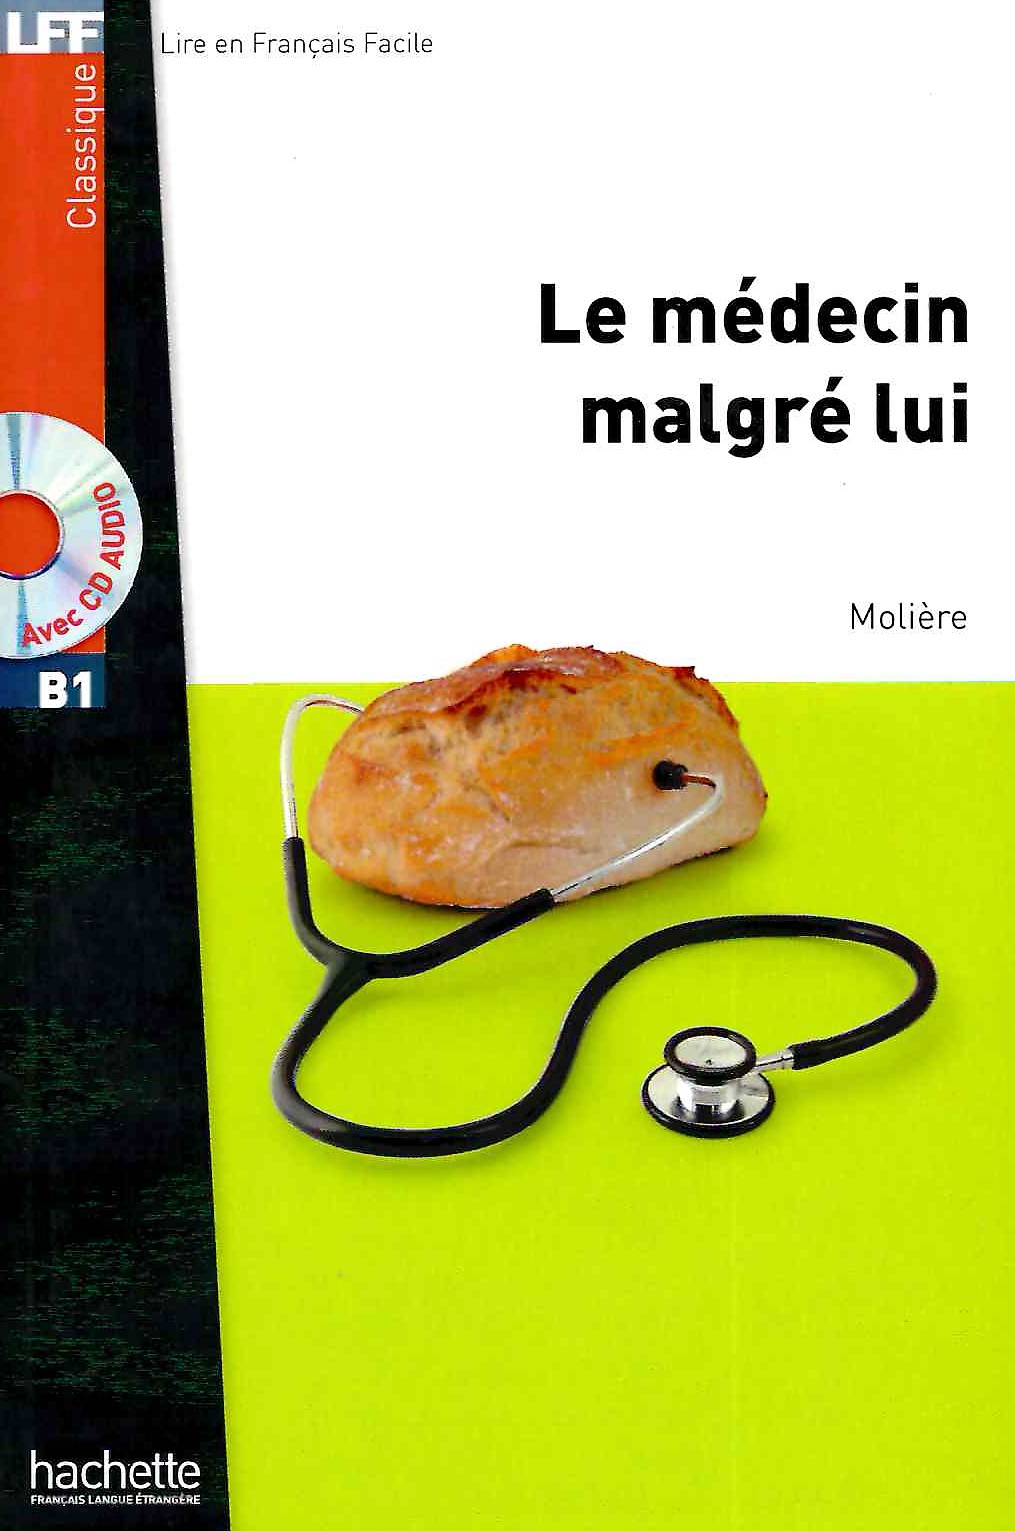 Le Medecin malgre lui + CD audio